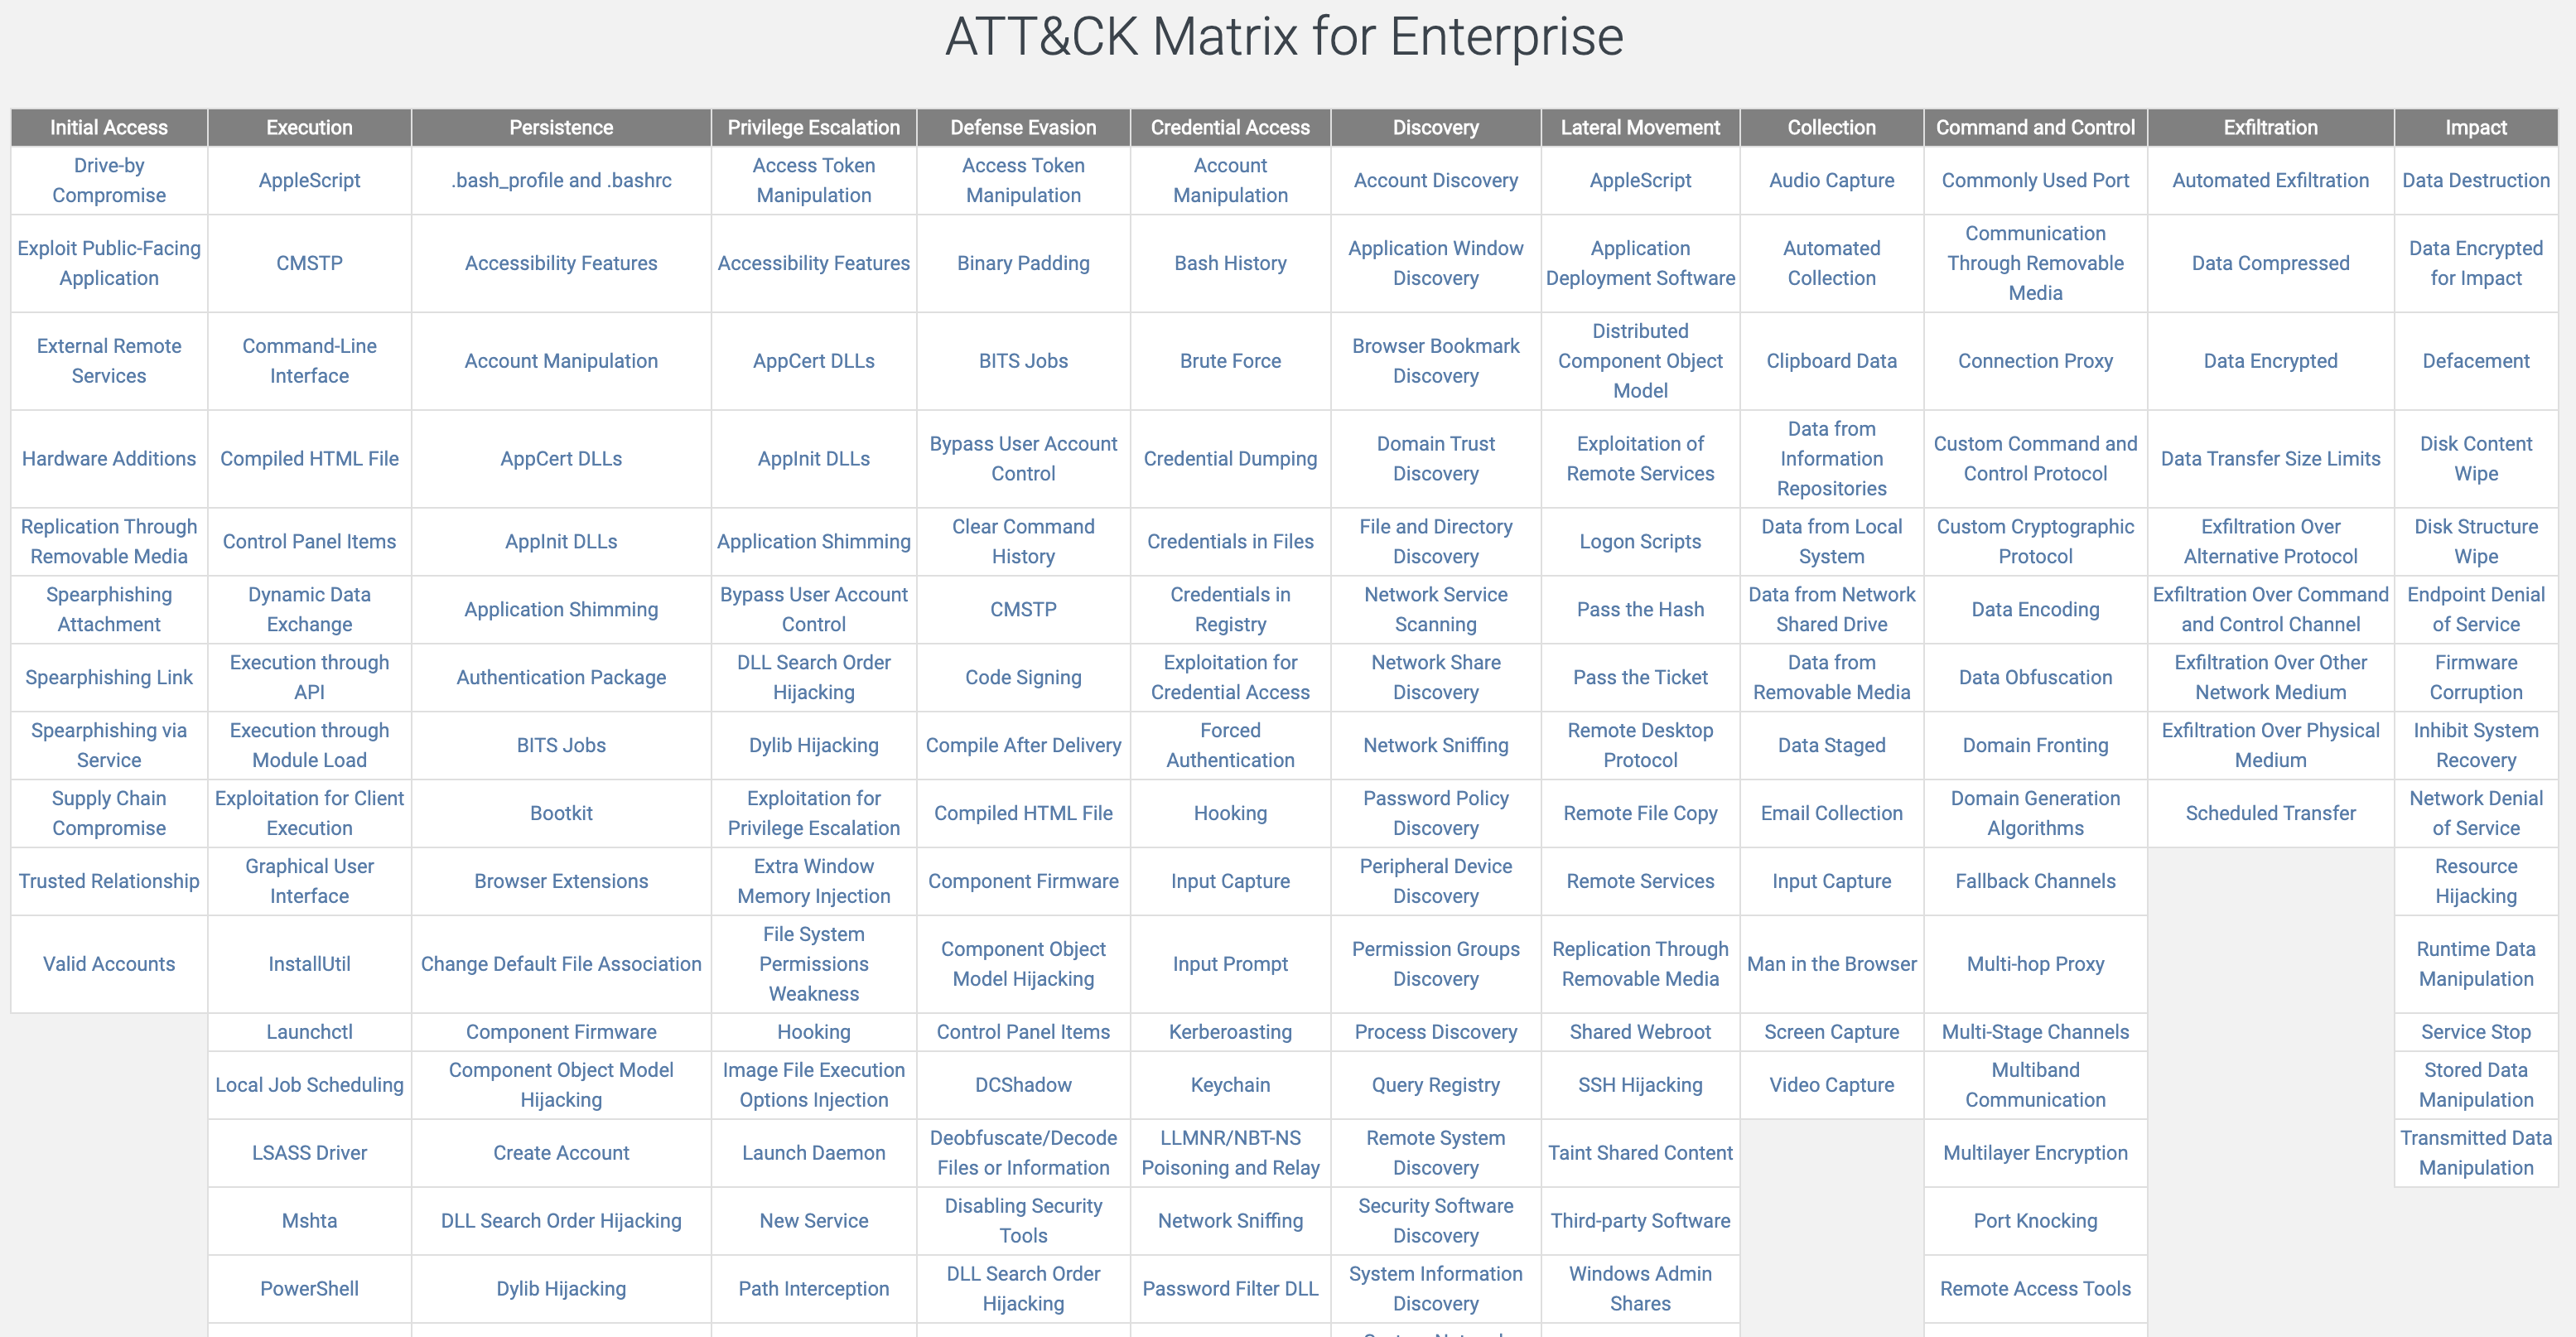 图 1-9 ATT&CK for Enterprise